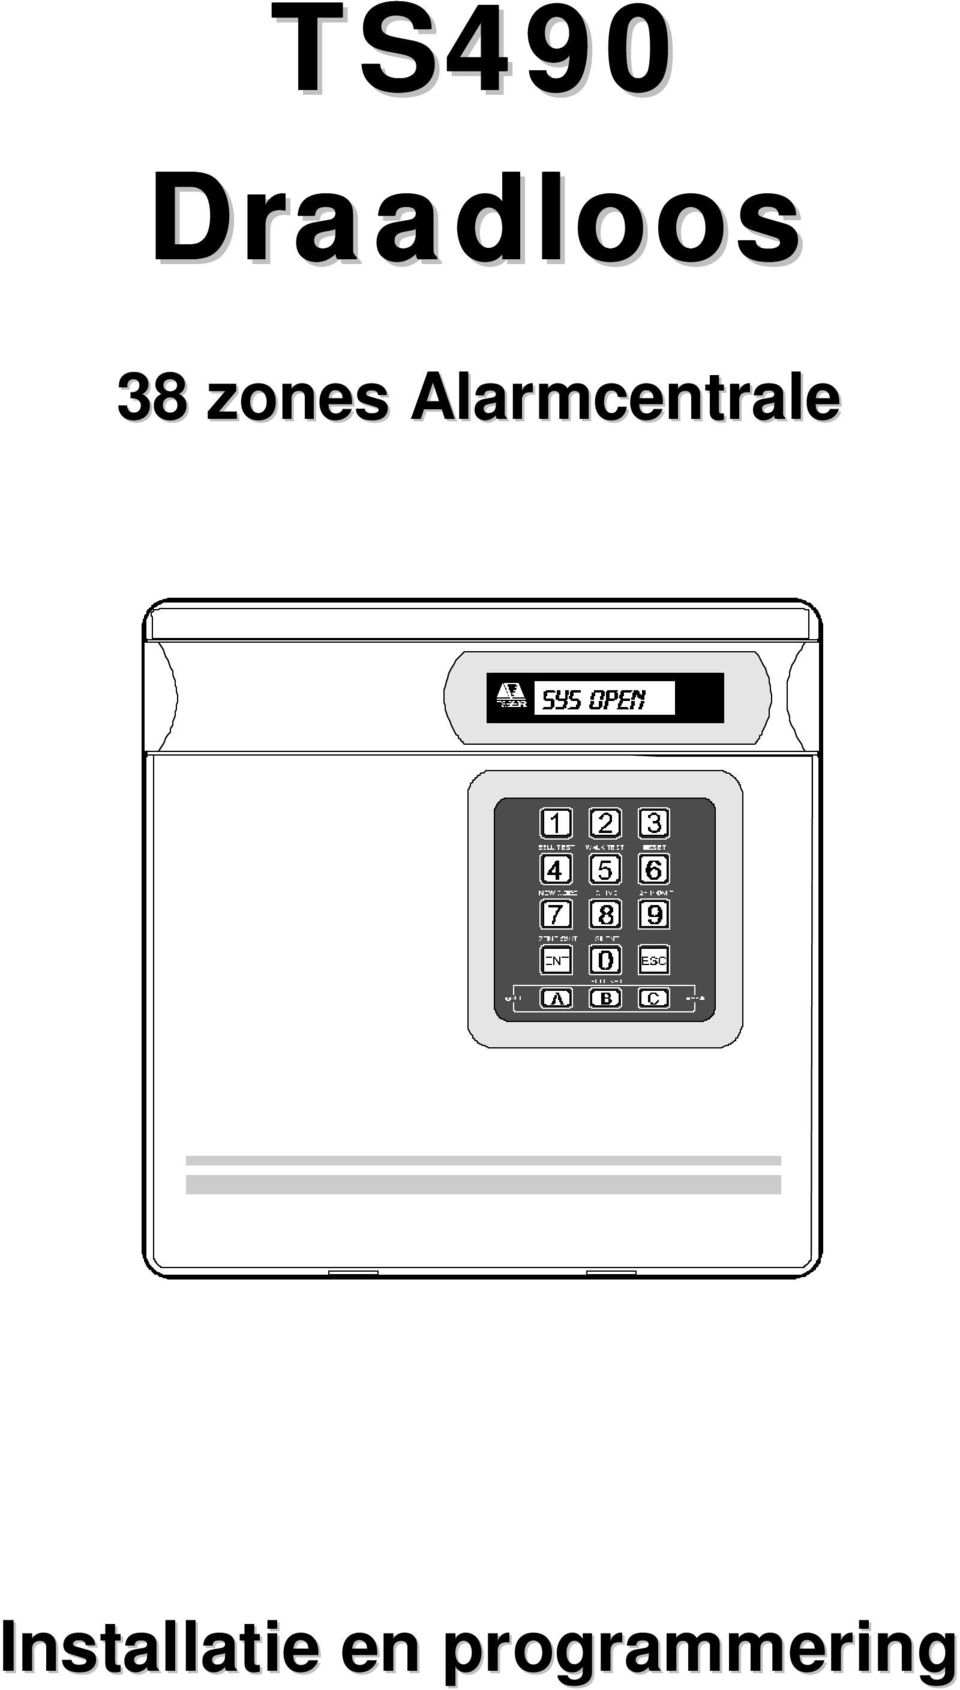 Alarmcentrale